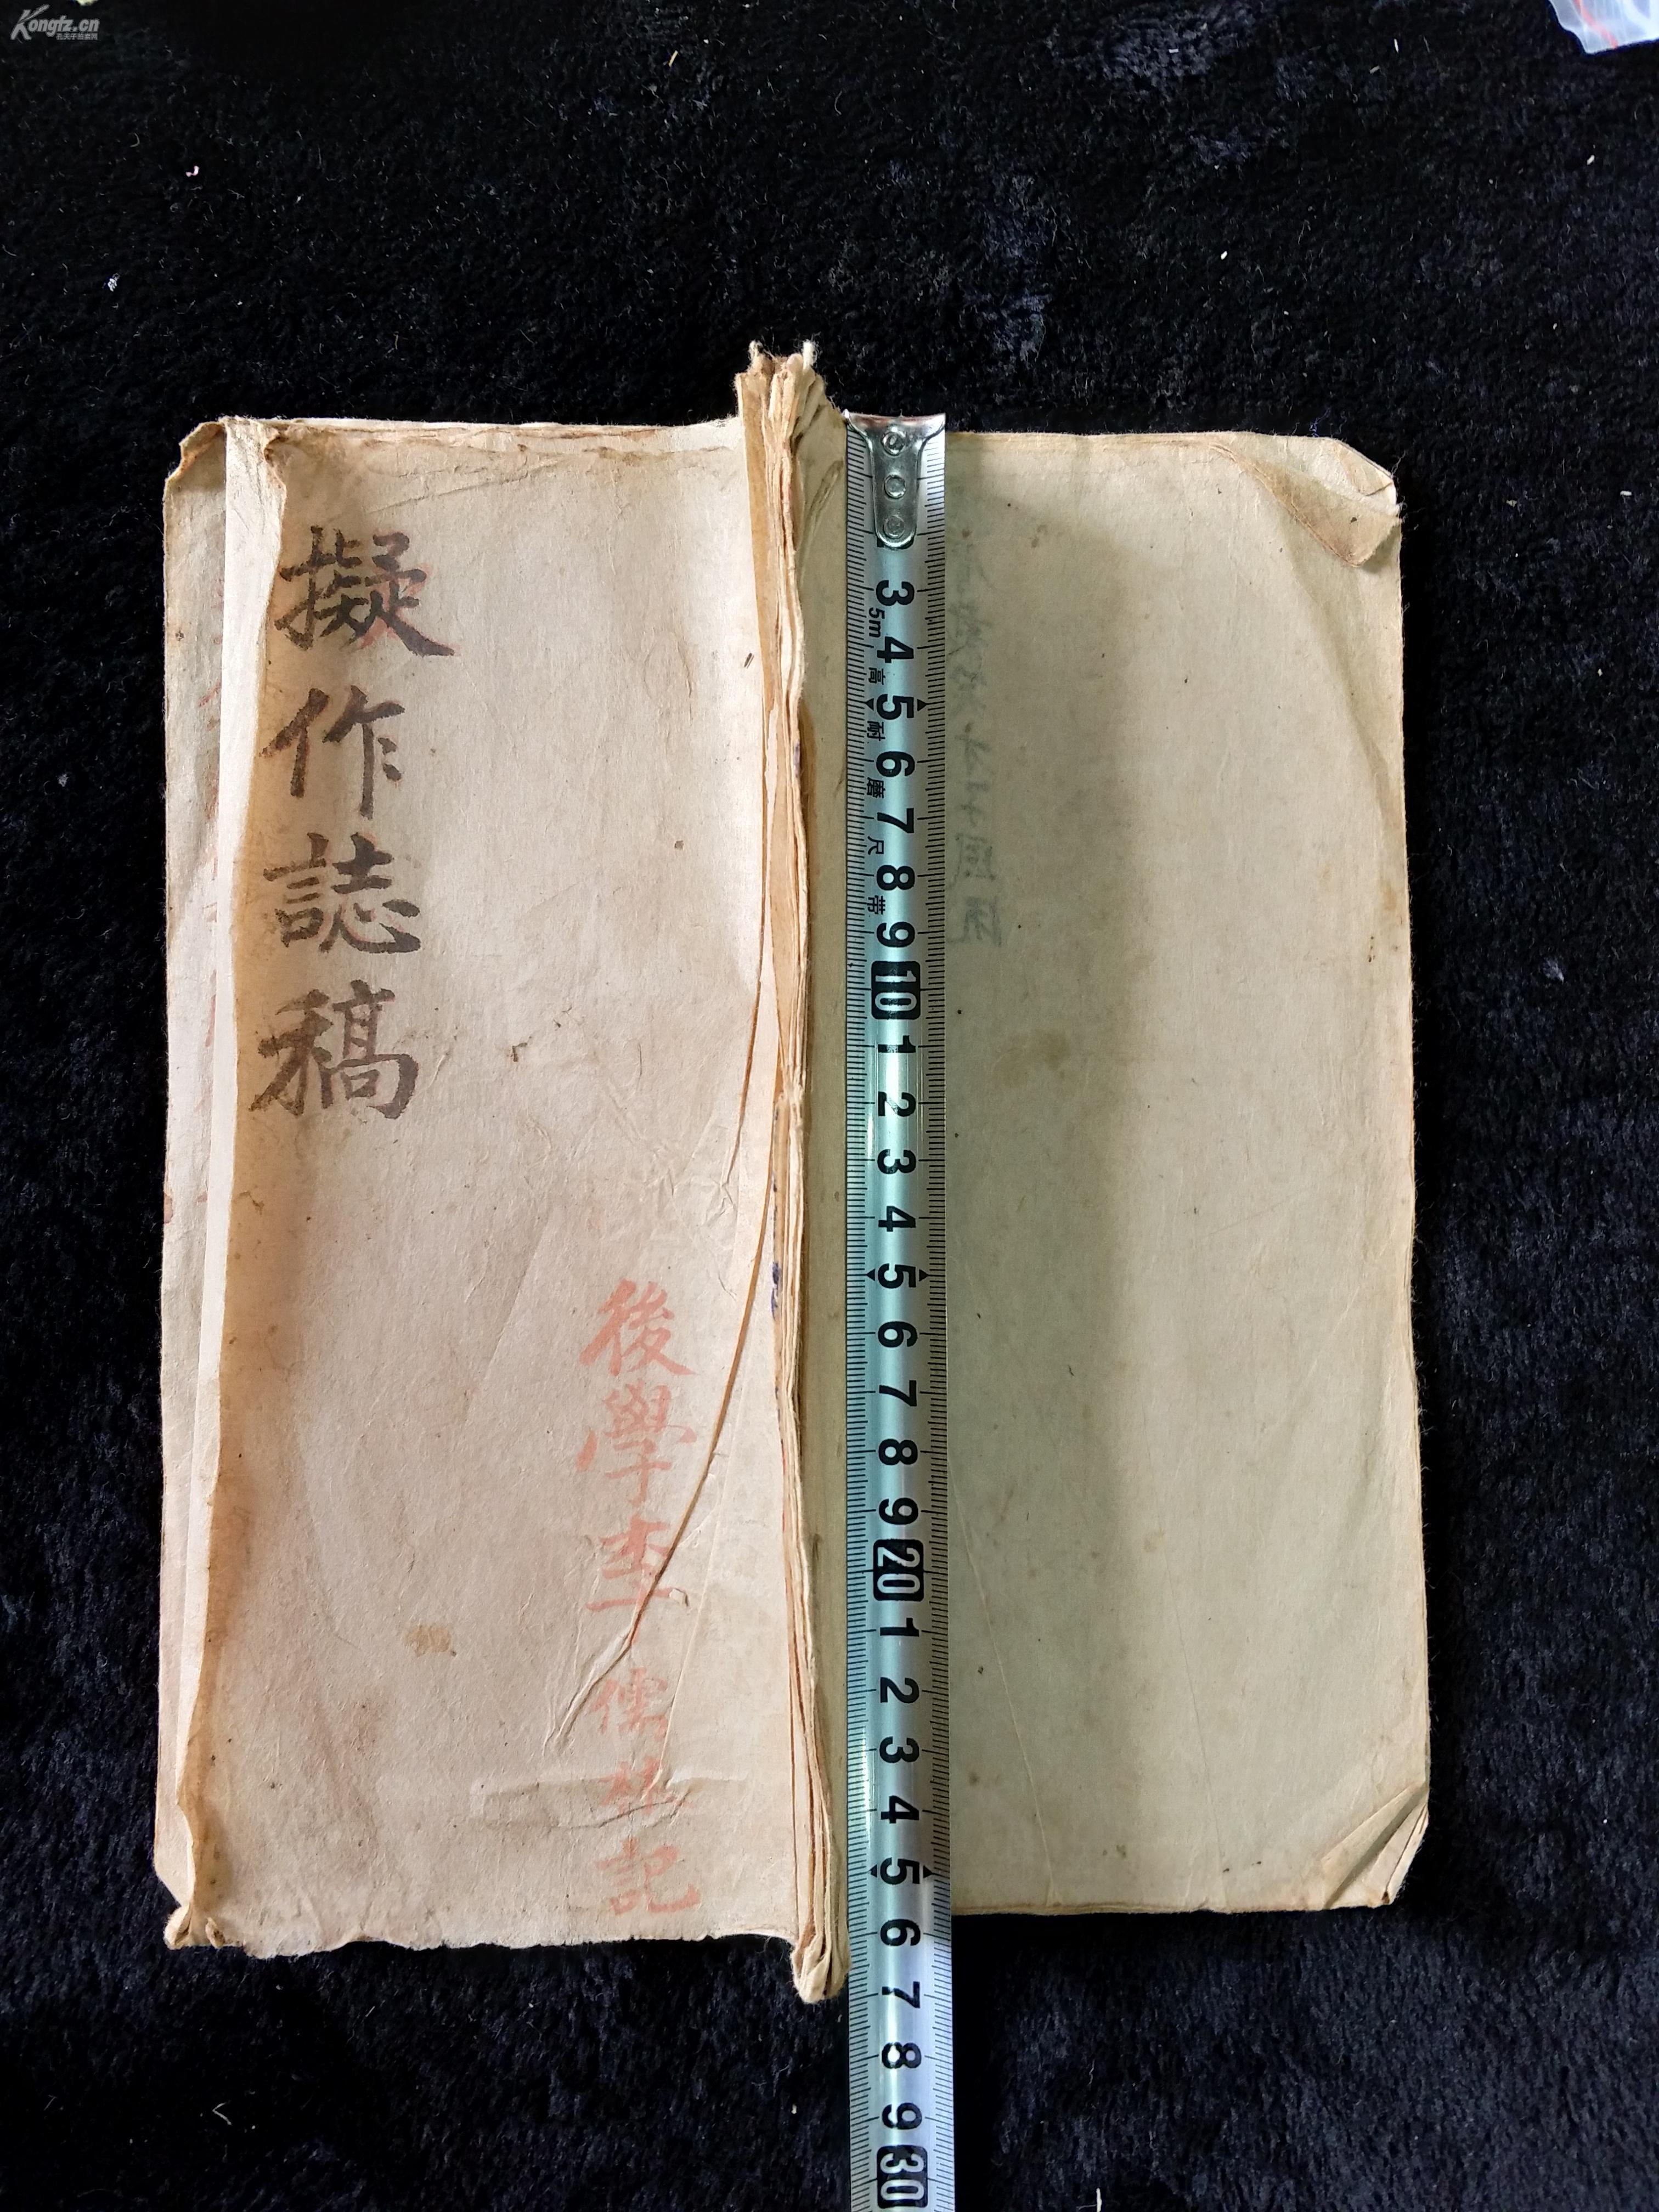 中国古籍 精美手抄《拟作志稿》 红笔手抄  字体蛮好看的   保留完好 品相可以 值 得收藏 @乐乐